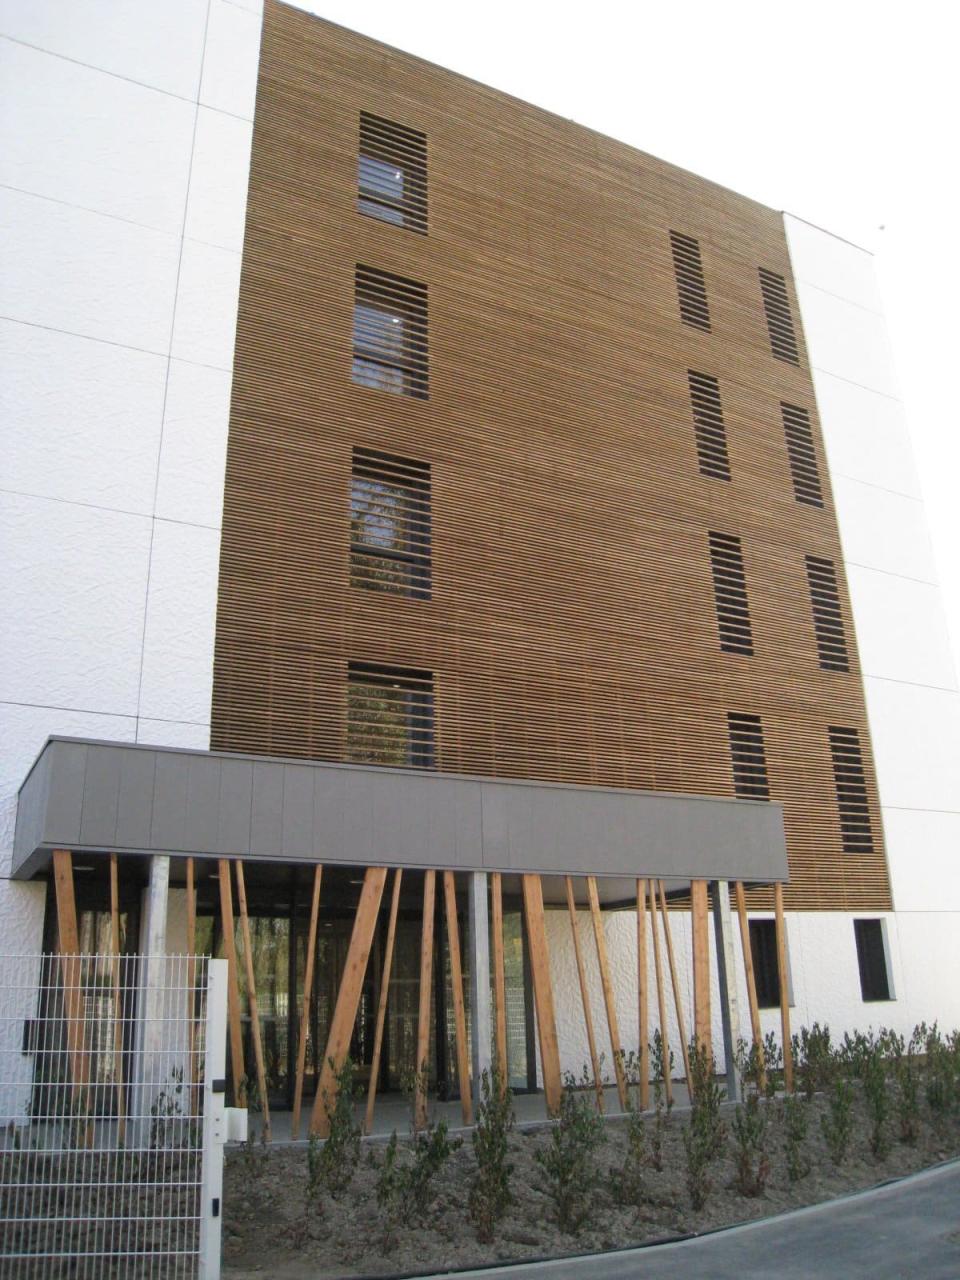 Immeuble de bureaux pour La Mondiale à Mons en Baroeul